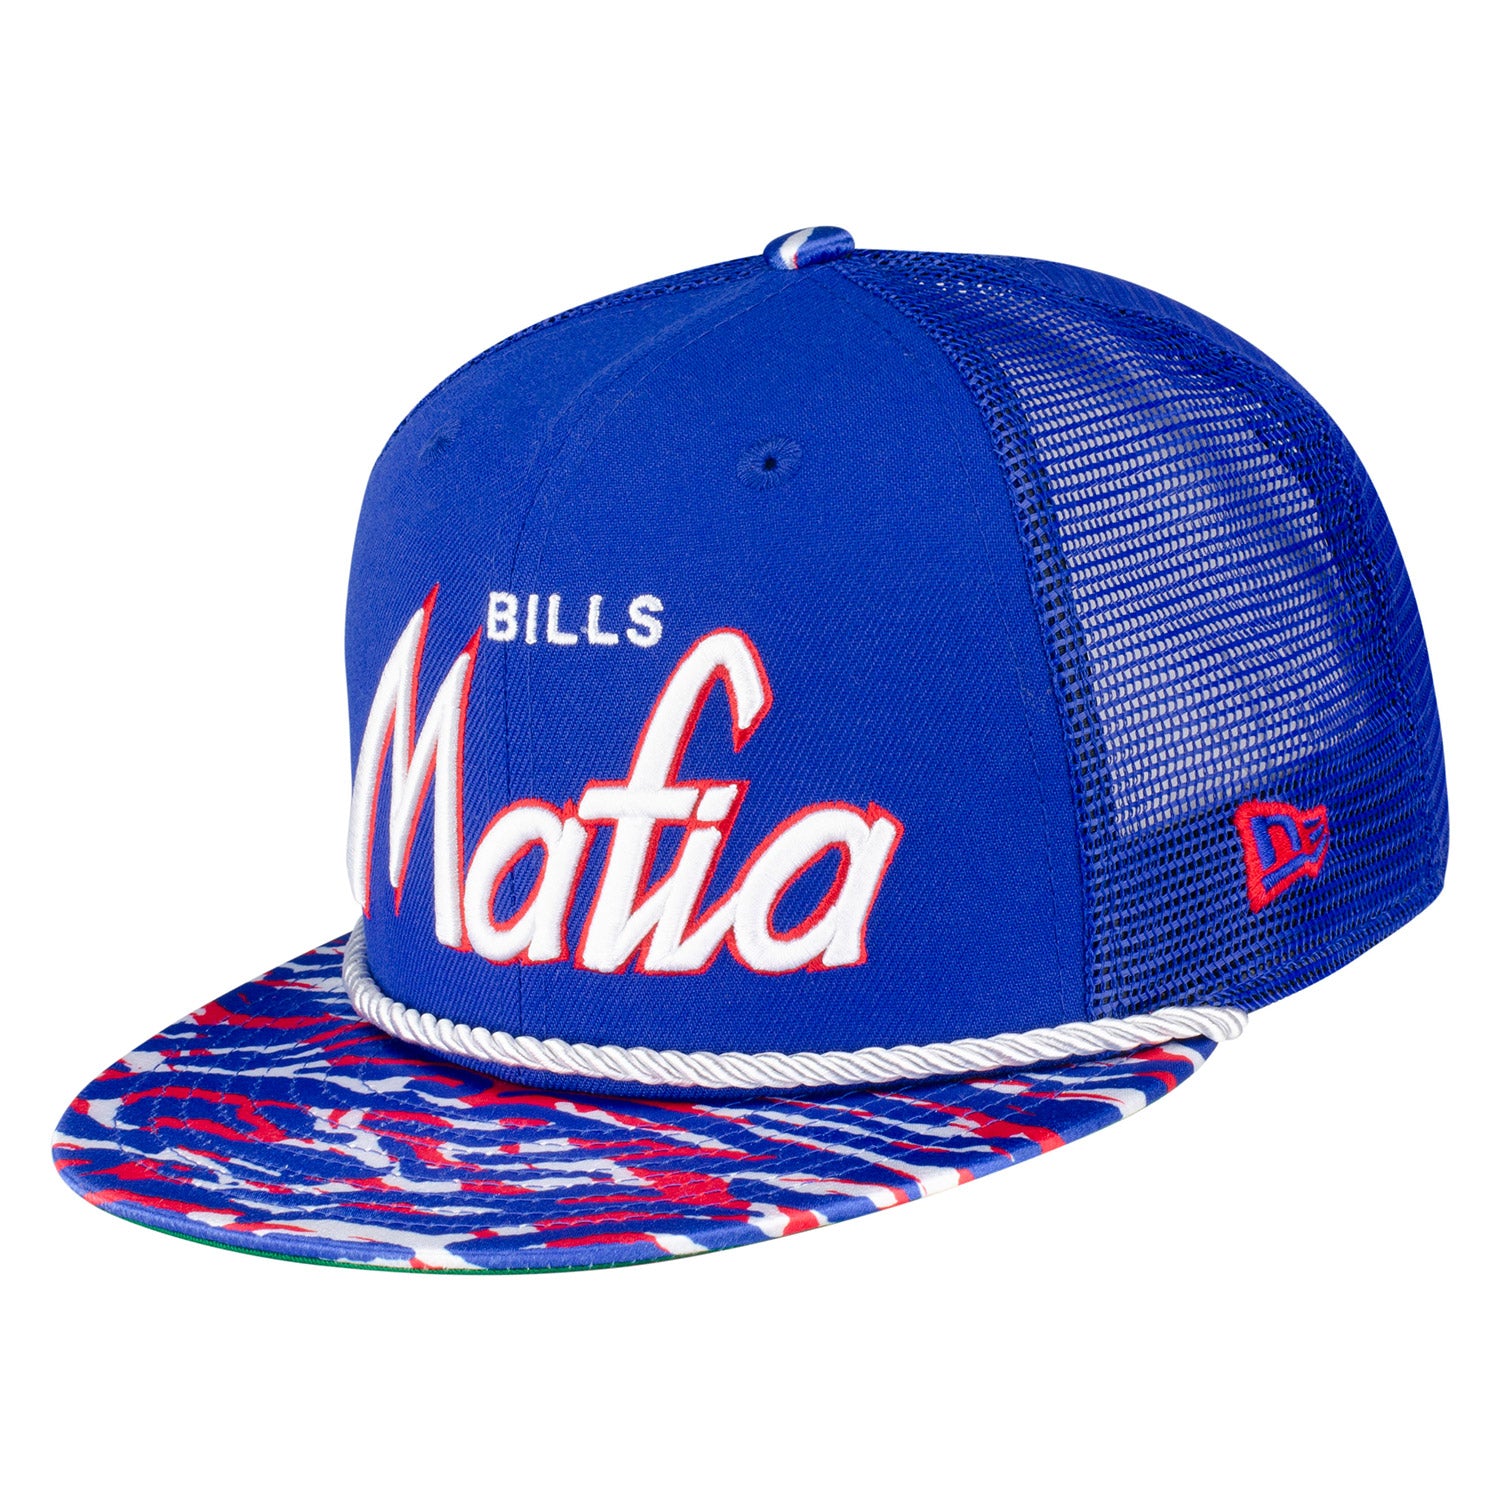 New Era Bills Mafia 9FIFTY Snapback | The Bills Store